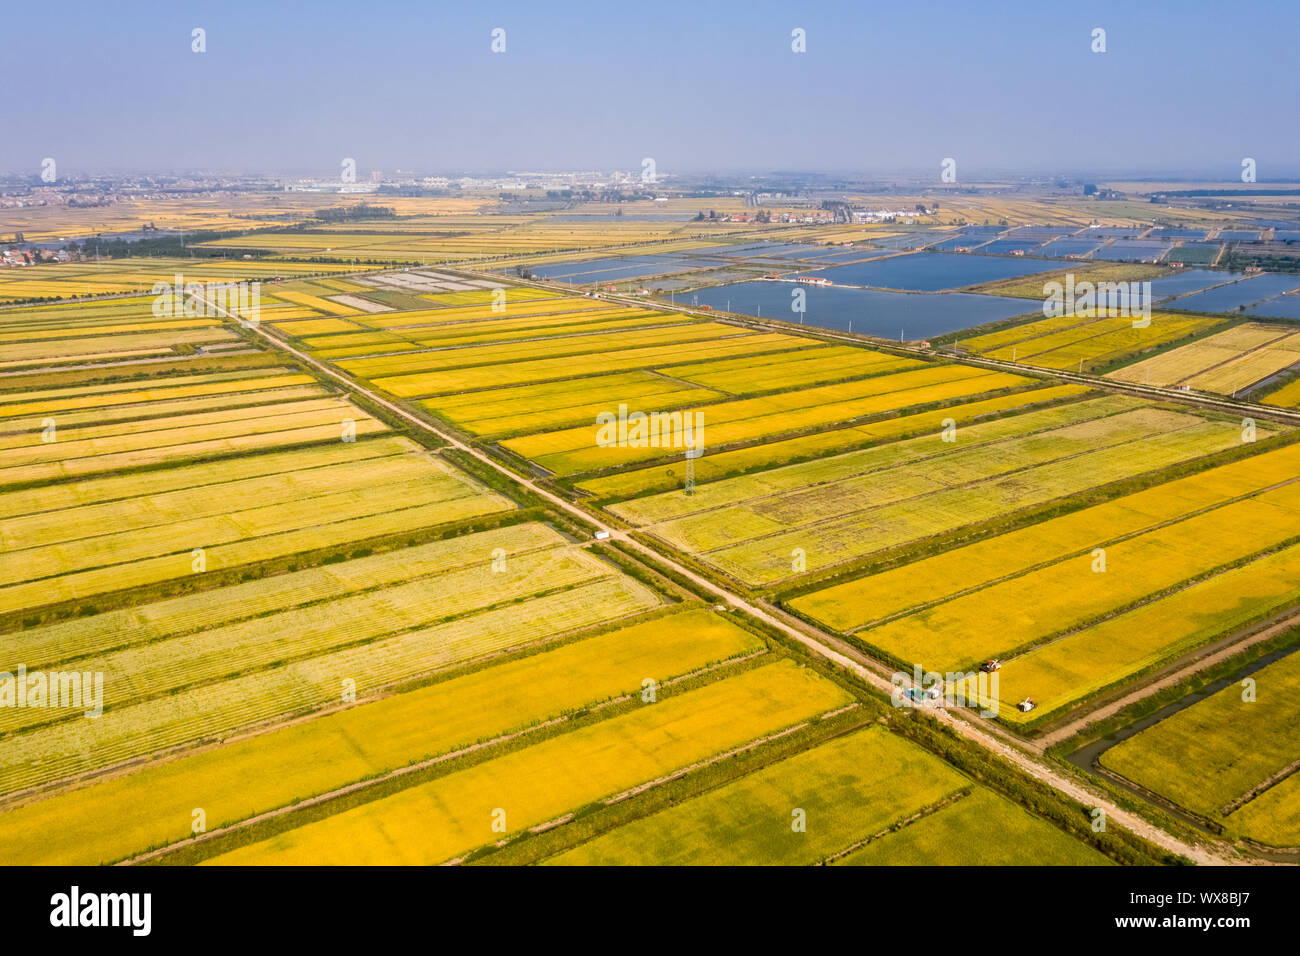 golden rice field in autumn Stock Photo